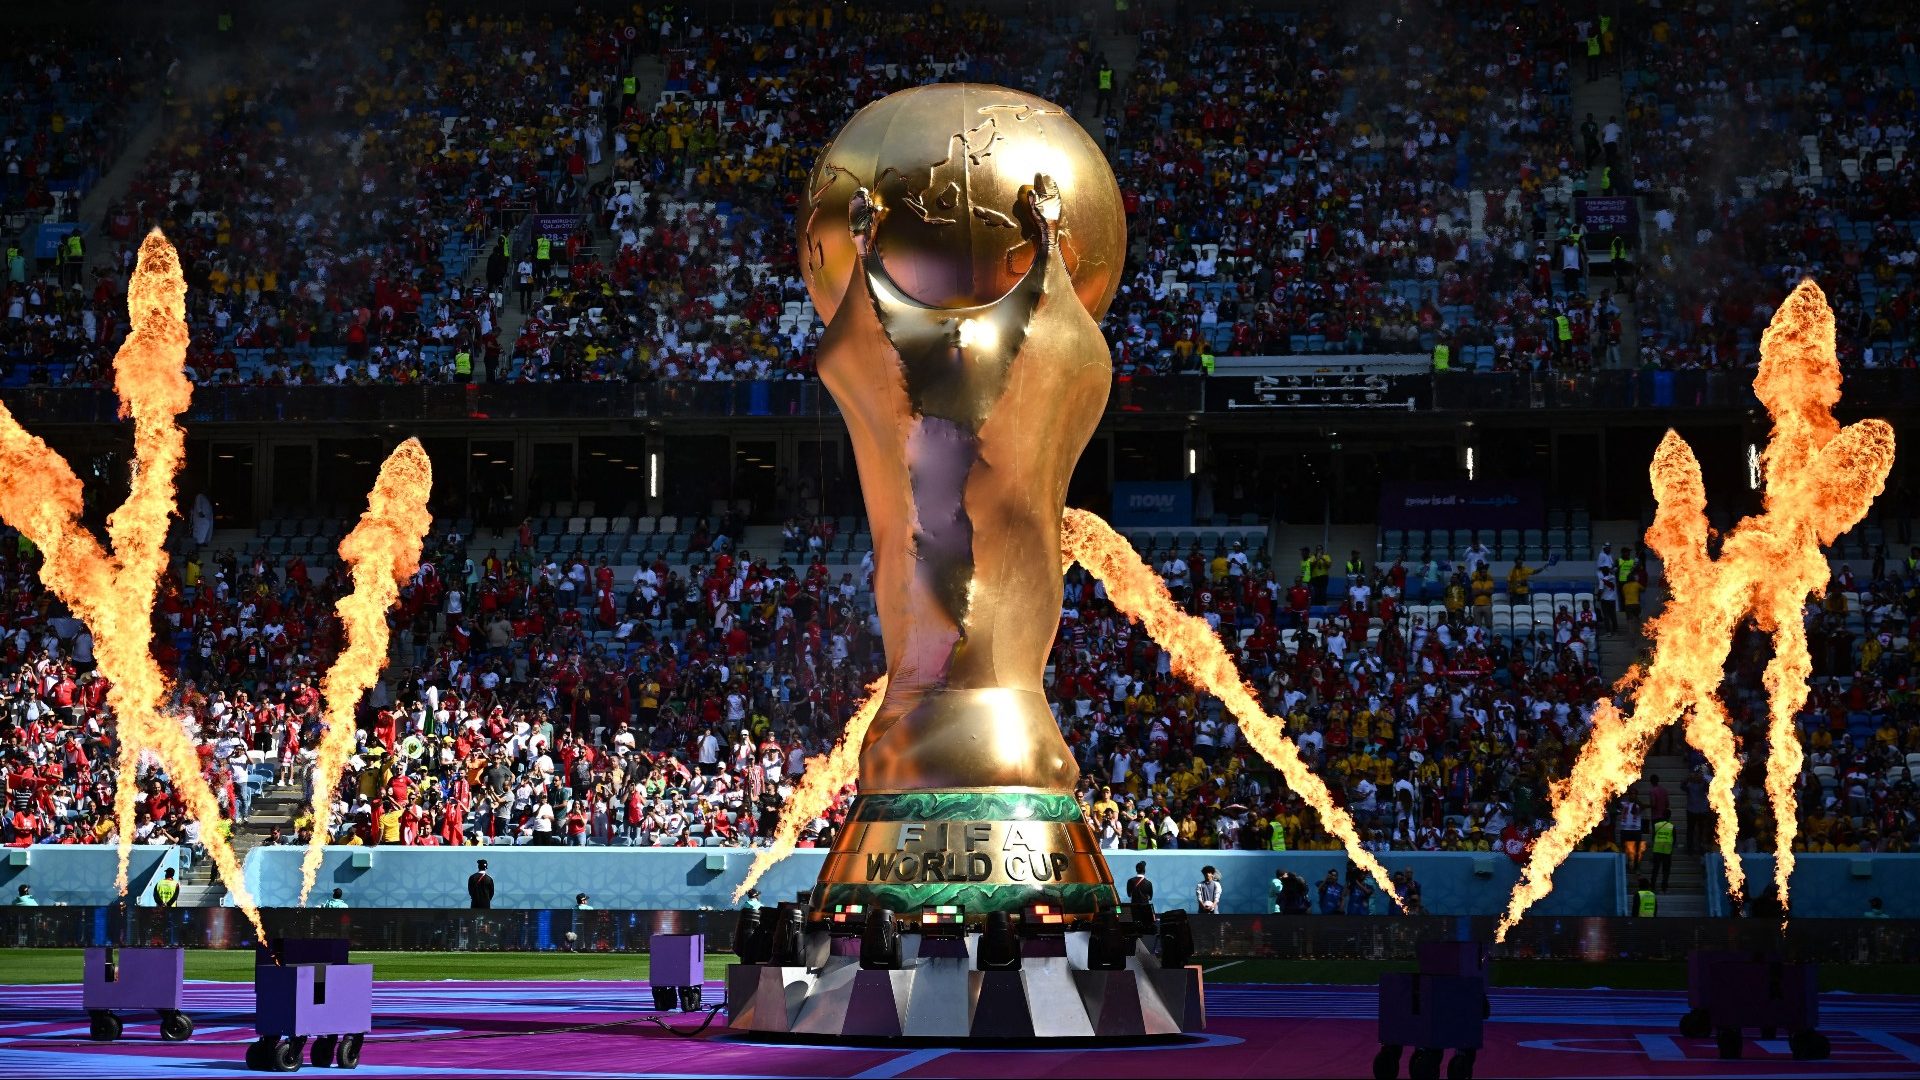 Uruguay enfrenta a Irán en una de sus últimas pruebas antes del Mundial